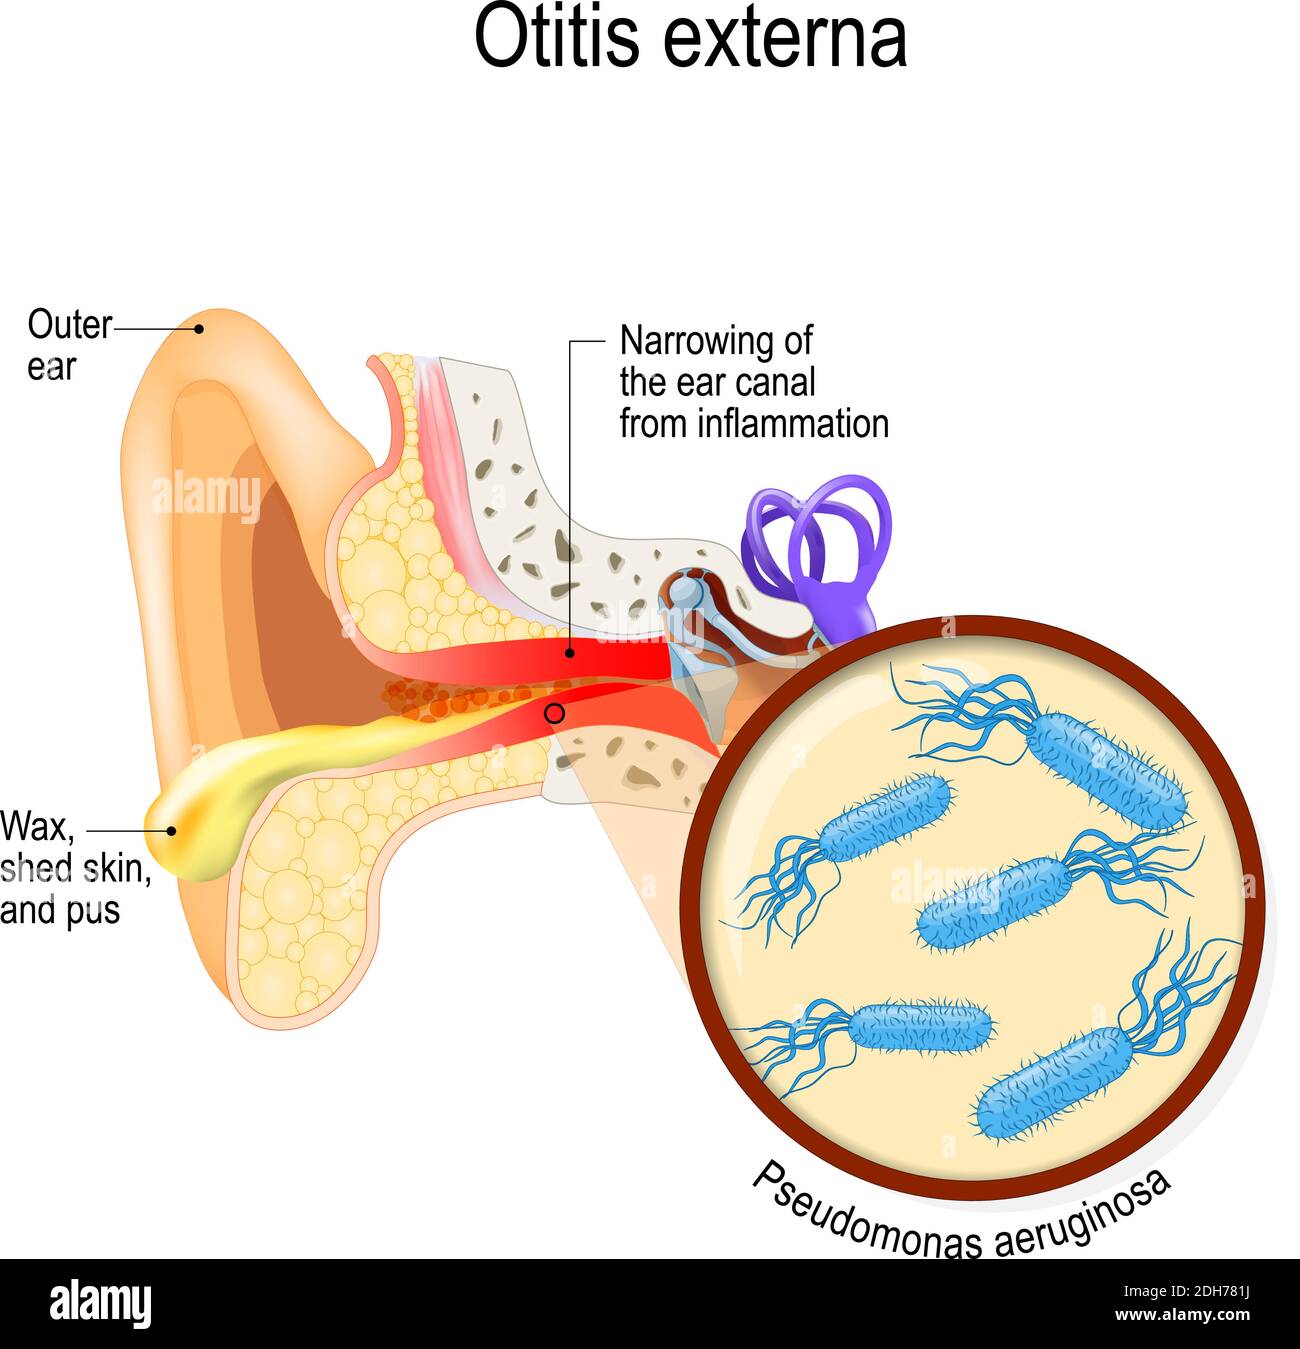 Das Ohr des Schwimmers. Otitis externa ist eine Entzündung des Gehörgangs. Bakterielle Infektionen Krankheit. Nahaufnahme von Pseudomonas aeruginosa. Menschliche Anatomie Stock Vektor